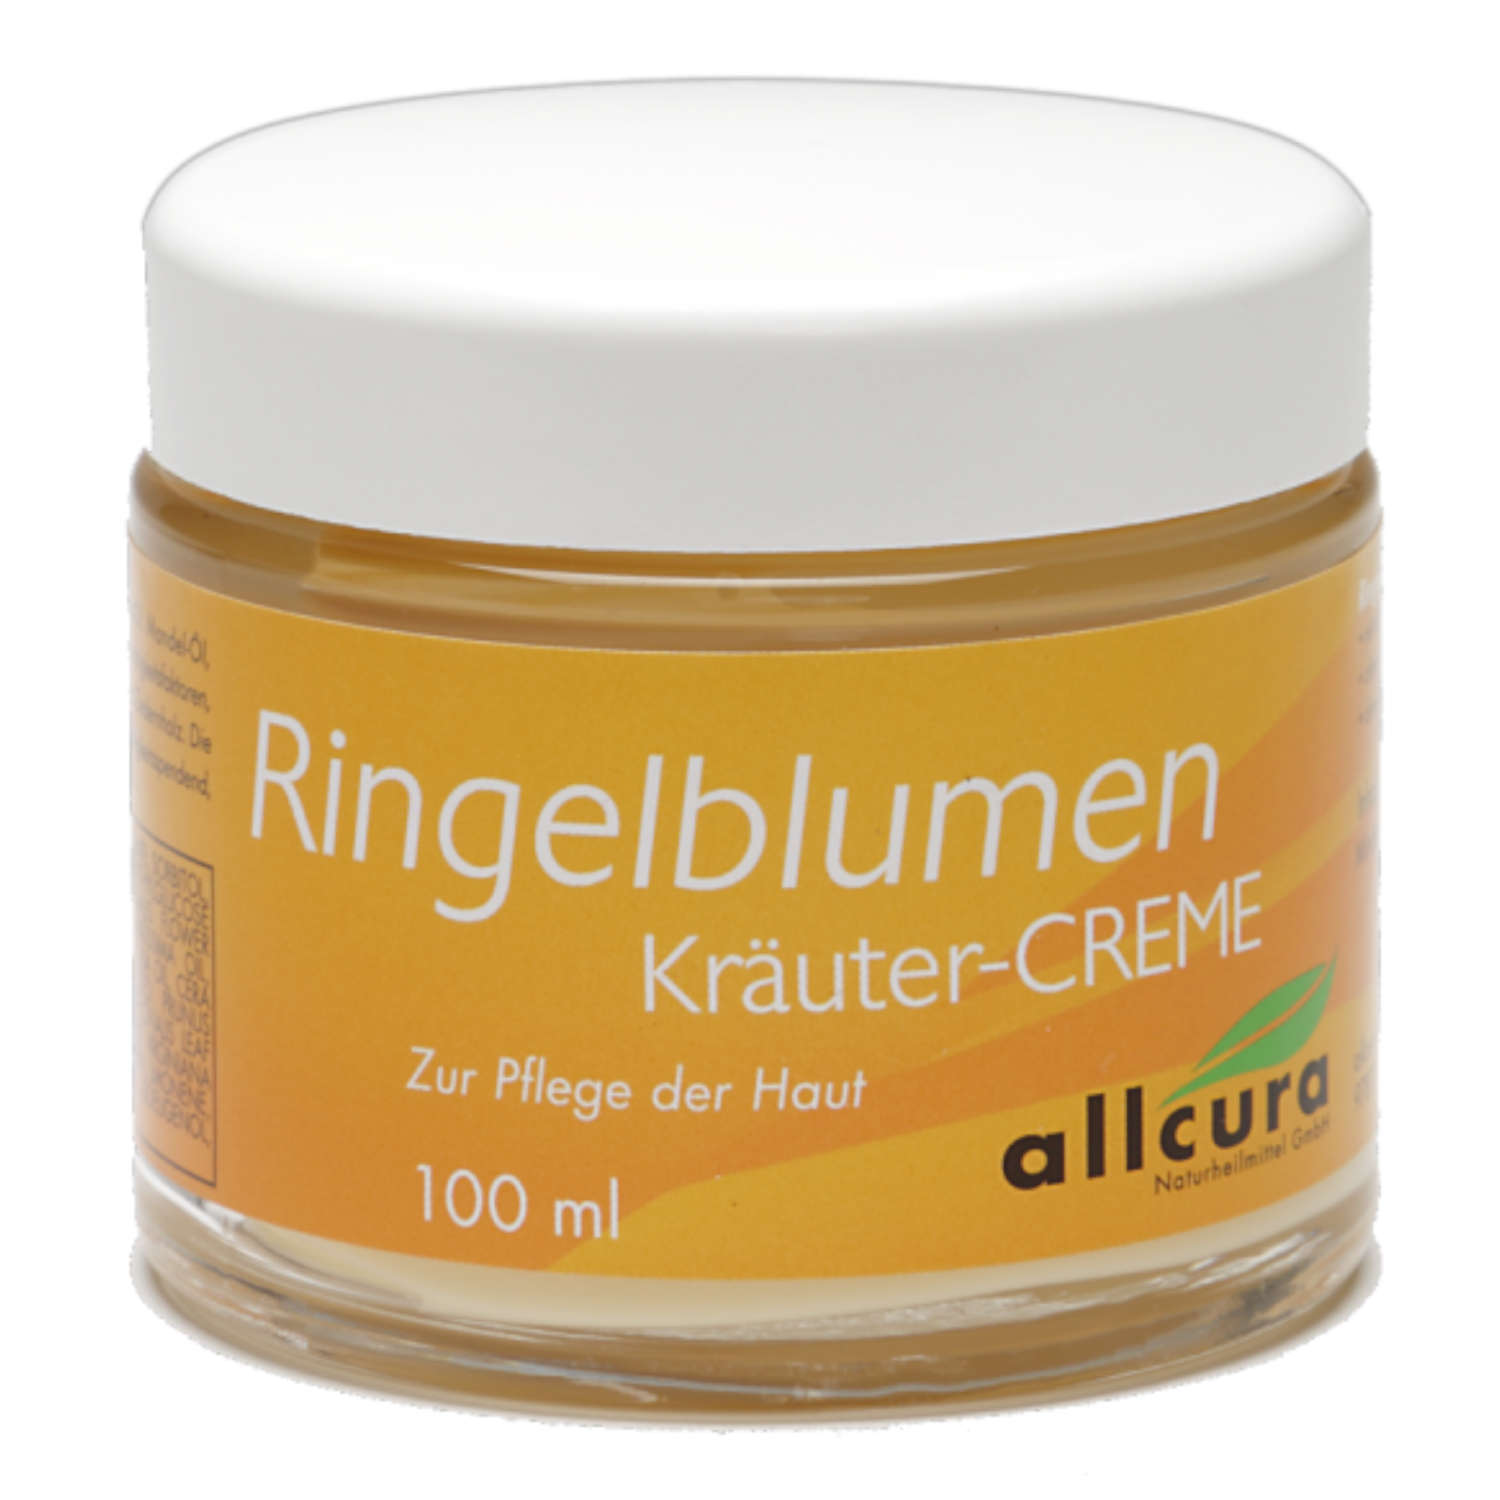 Ringelblumen Kräuter Creme von Allcura - 100ml